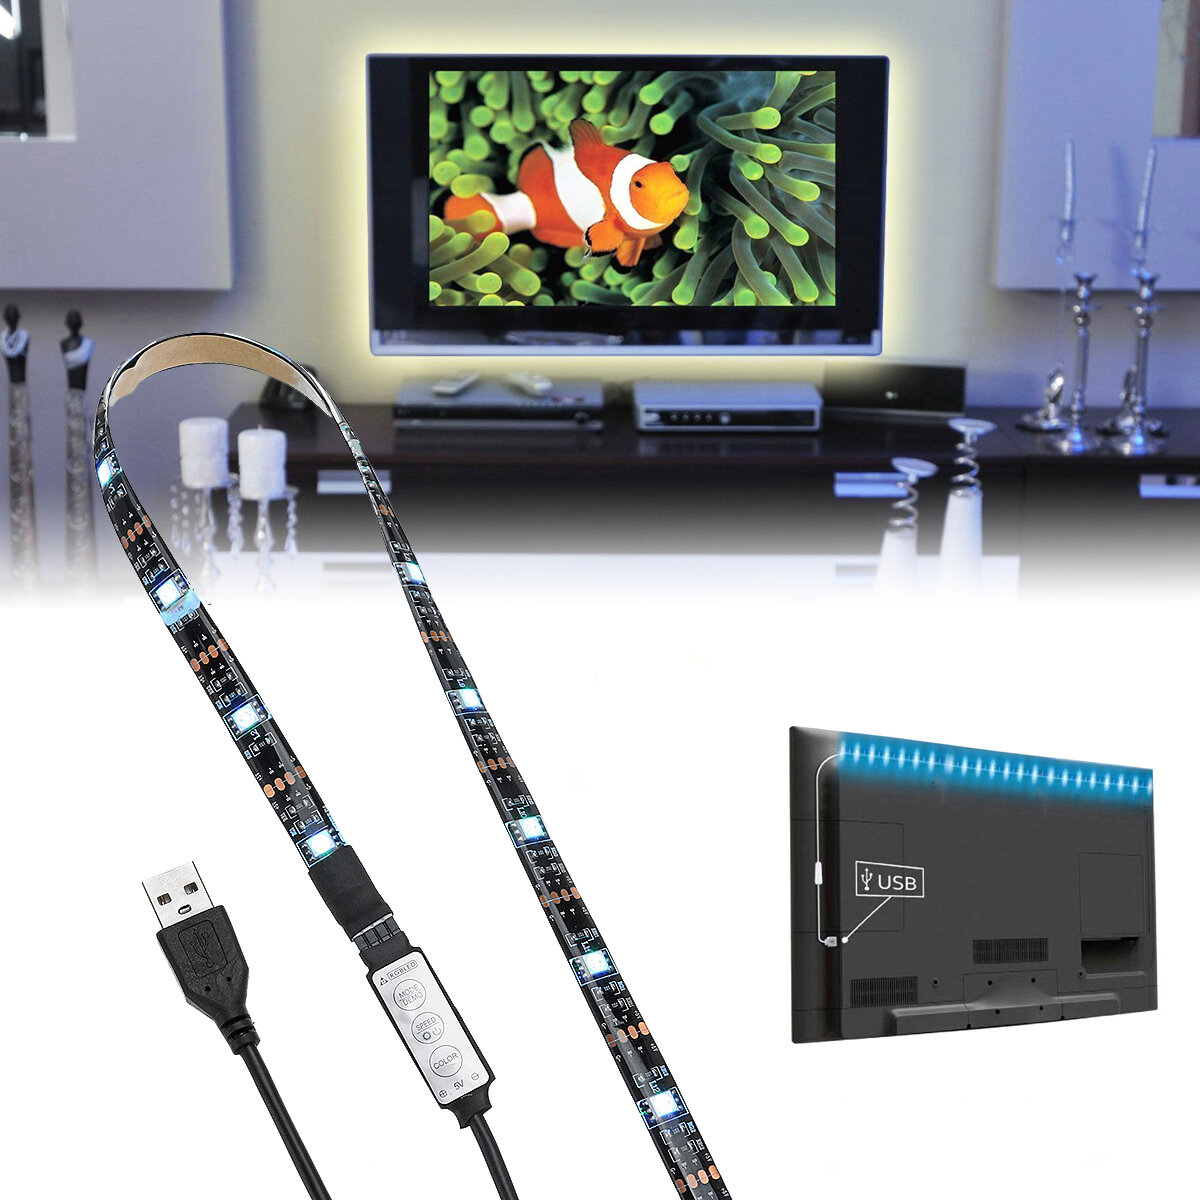 

DC5V USB Powered SMD5050 RGB Изменение цвета LED Стрим свет Компьютерная подсветка телевизора Набор